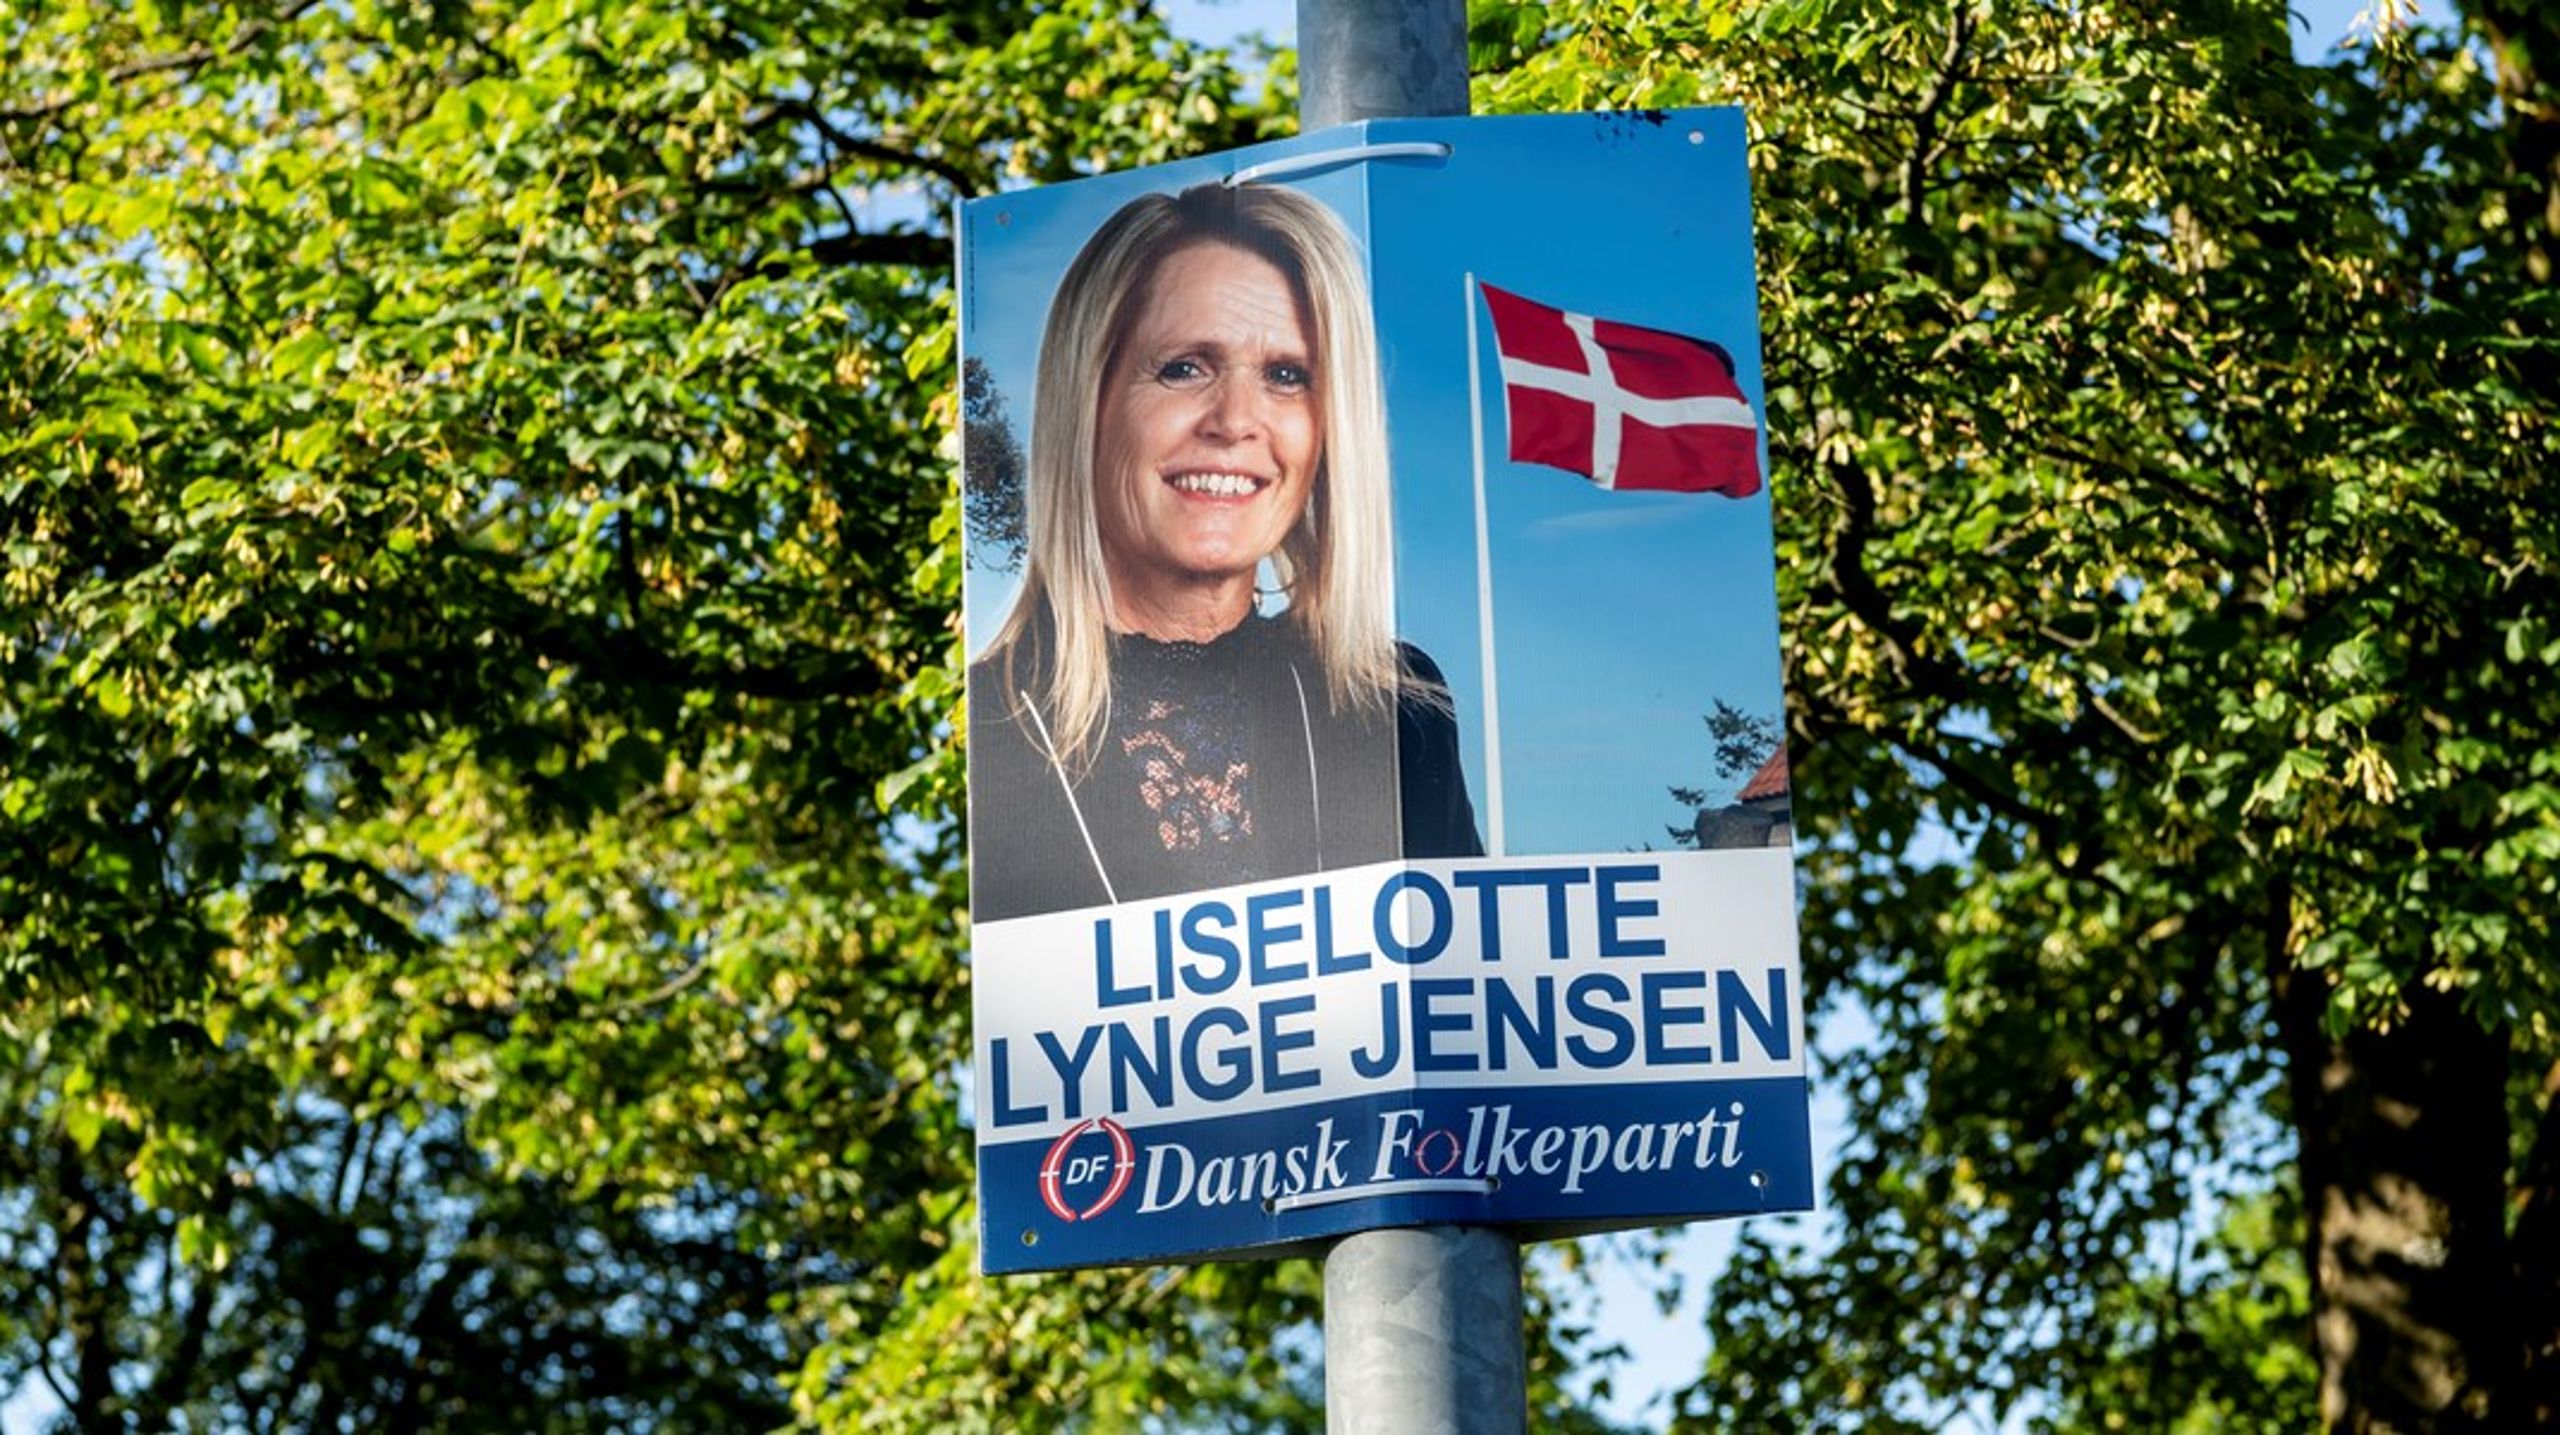 "Mine holdninger er stadig den samme, så jeg fører stadig den samme politik," skriver Liselotte Lynge.